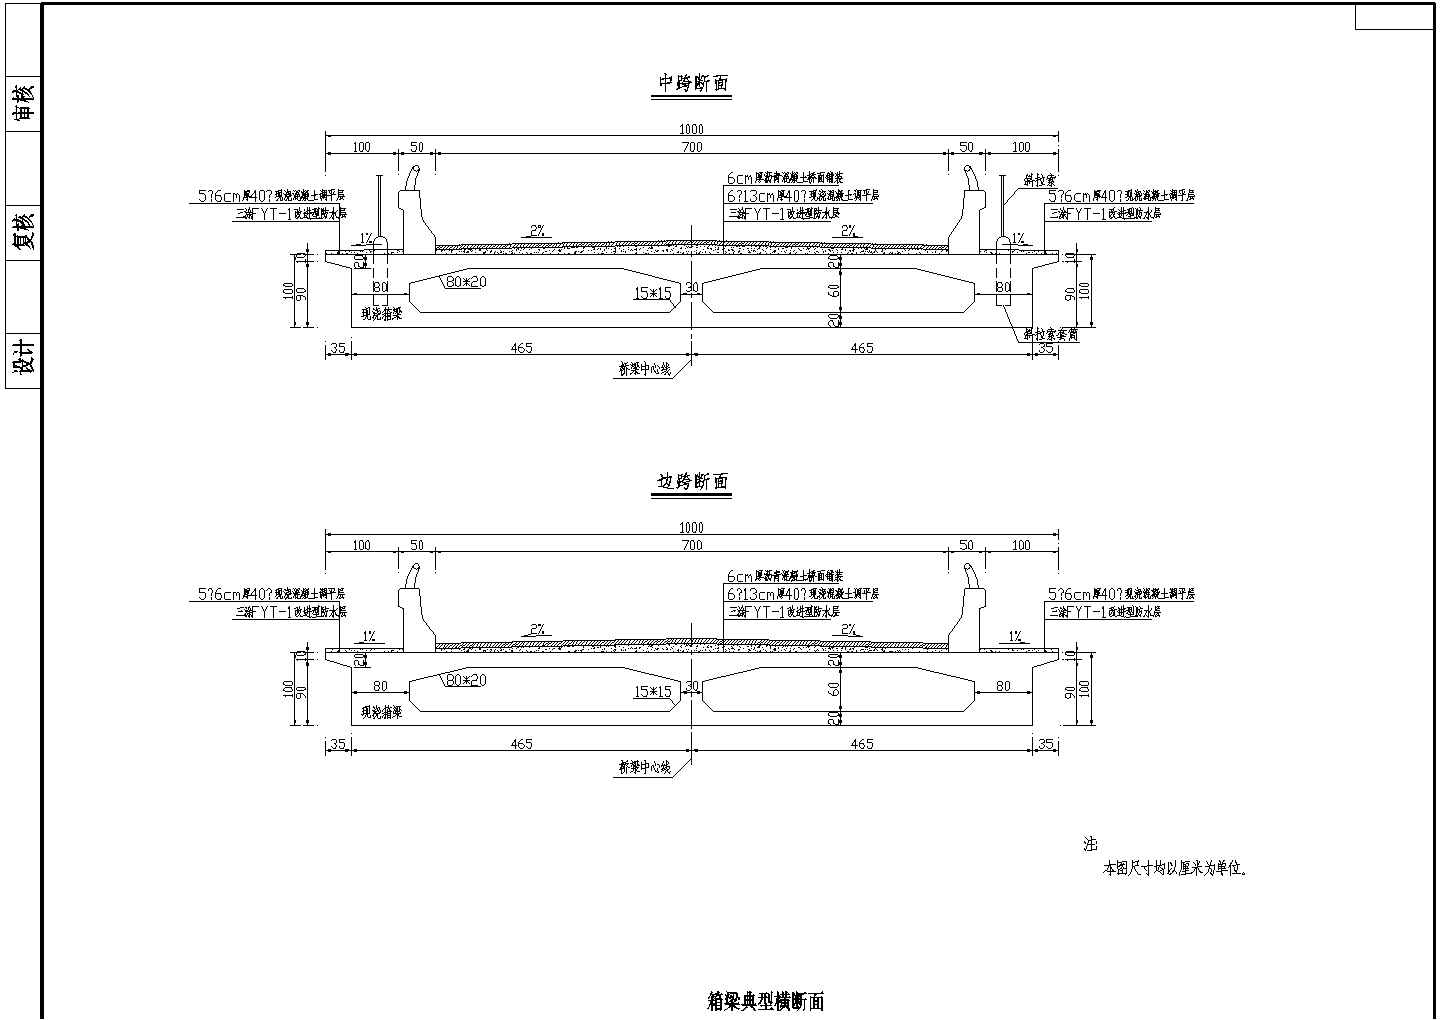 104m预应力钢筋混凝土组合体系斜拉桥箱梁典型横断面节点详图设计-图一